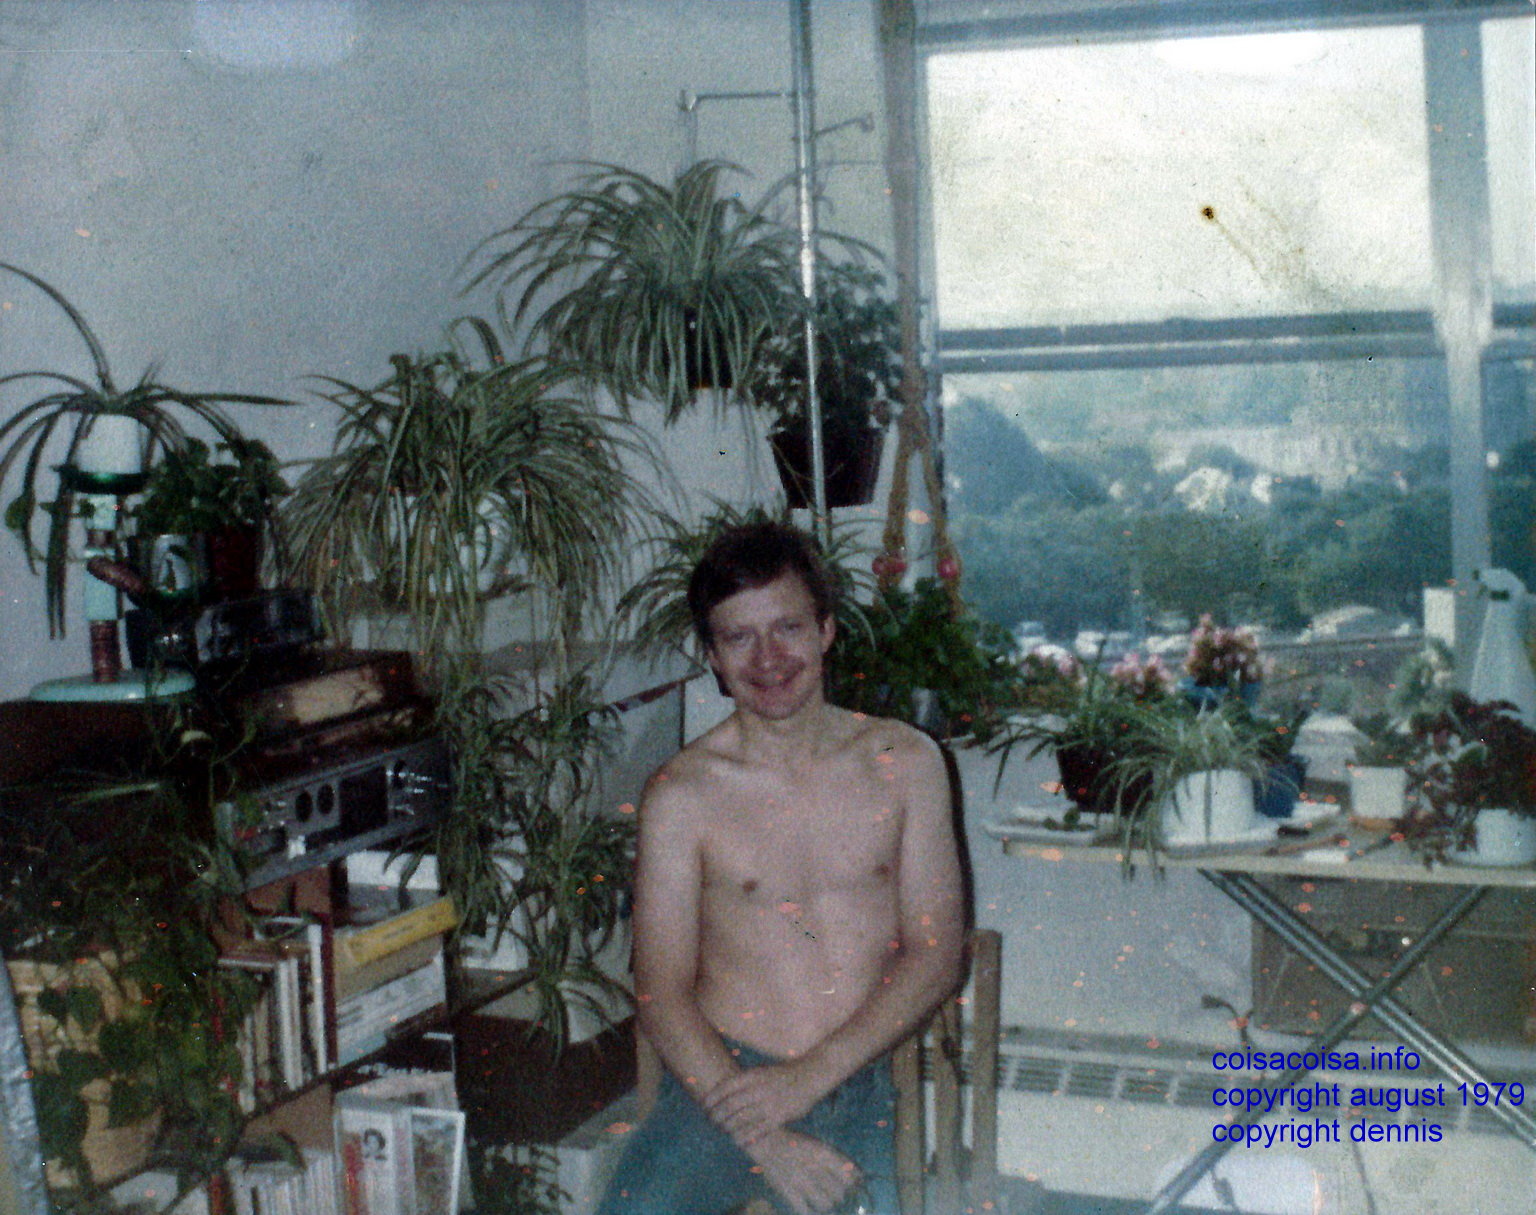 Dennis shirtless in 1981